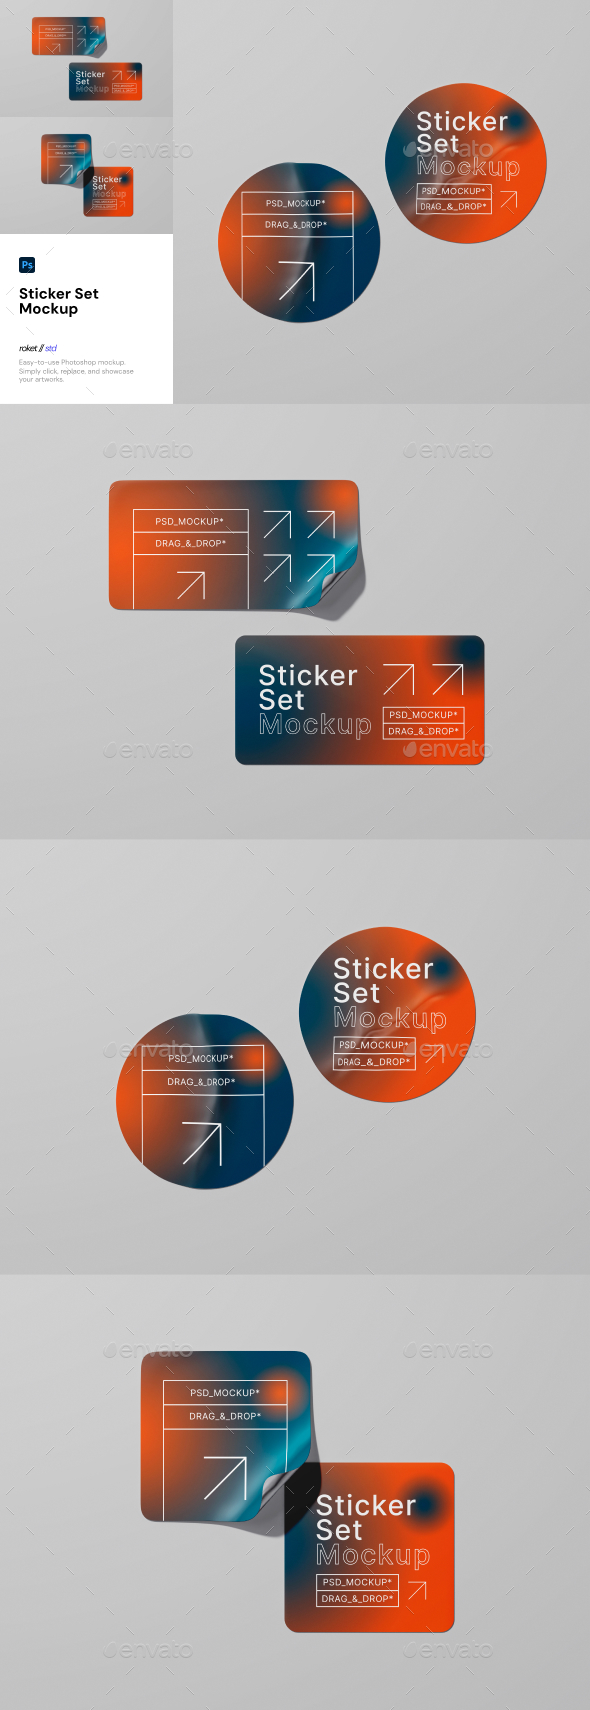 [DOWNLOAD]Sticker Set Mockup